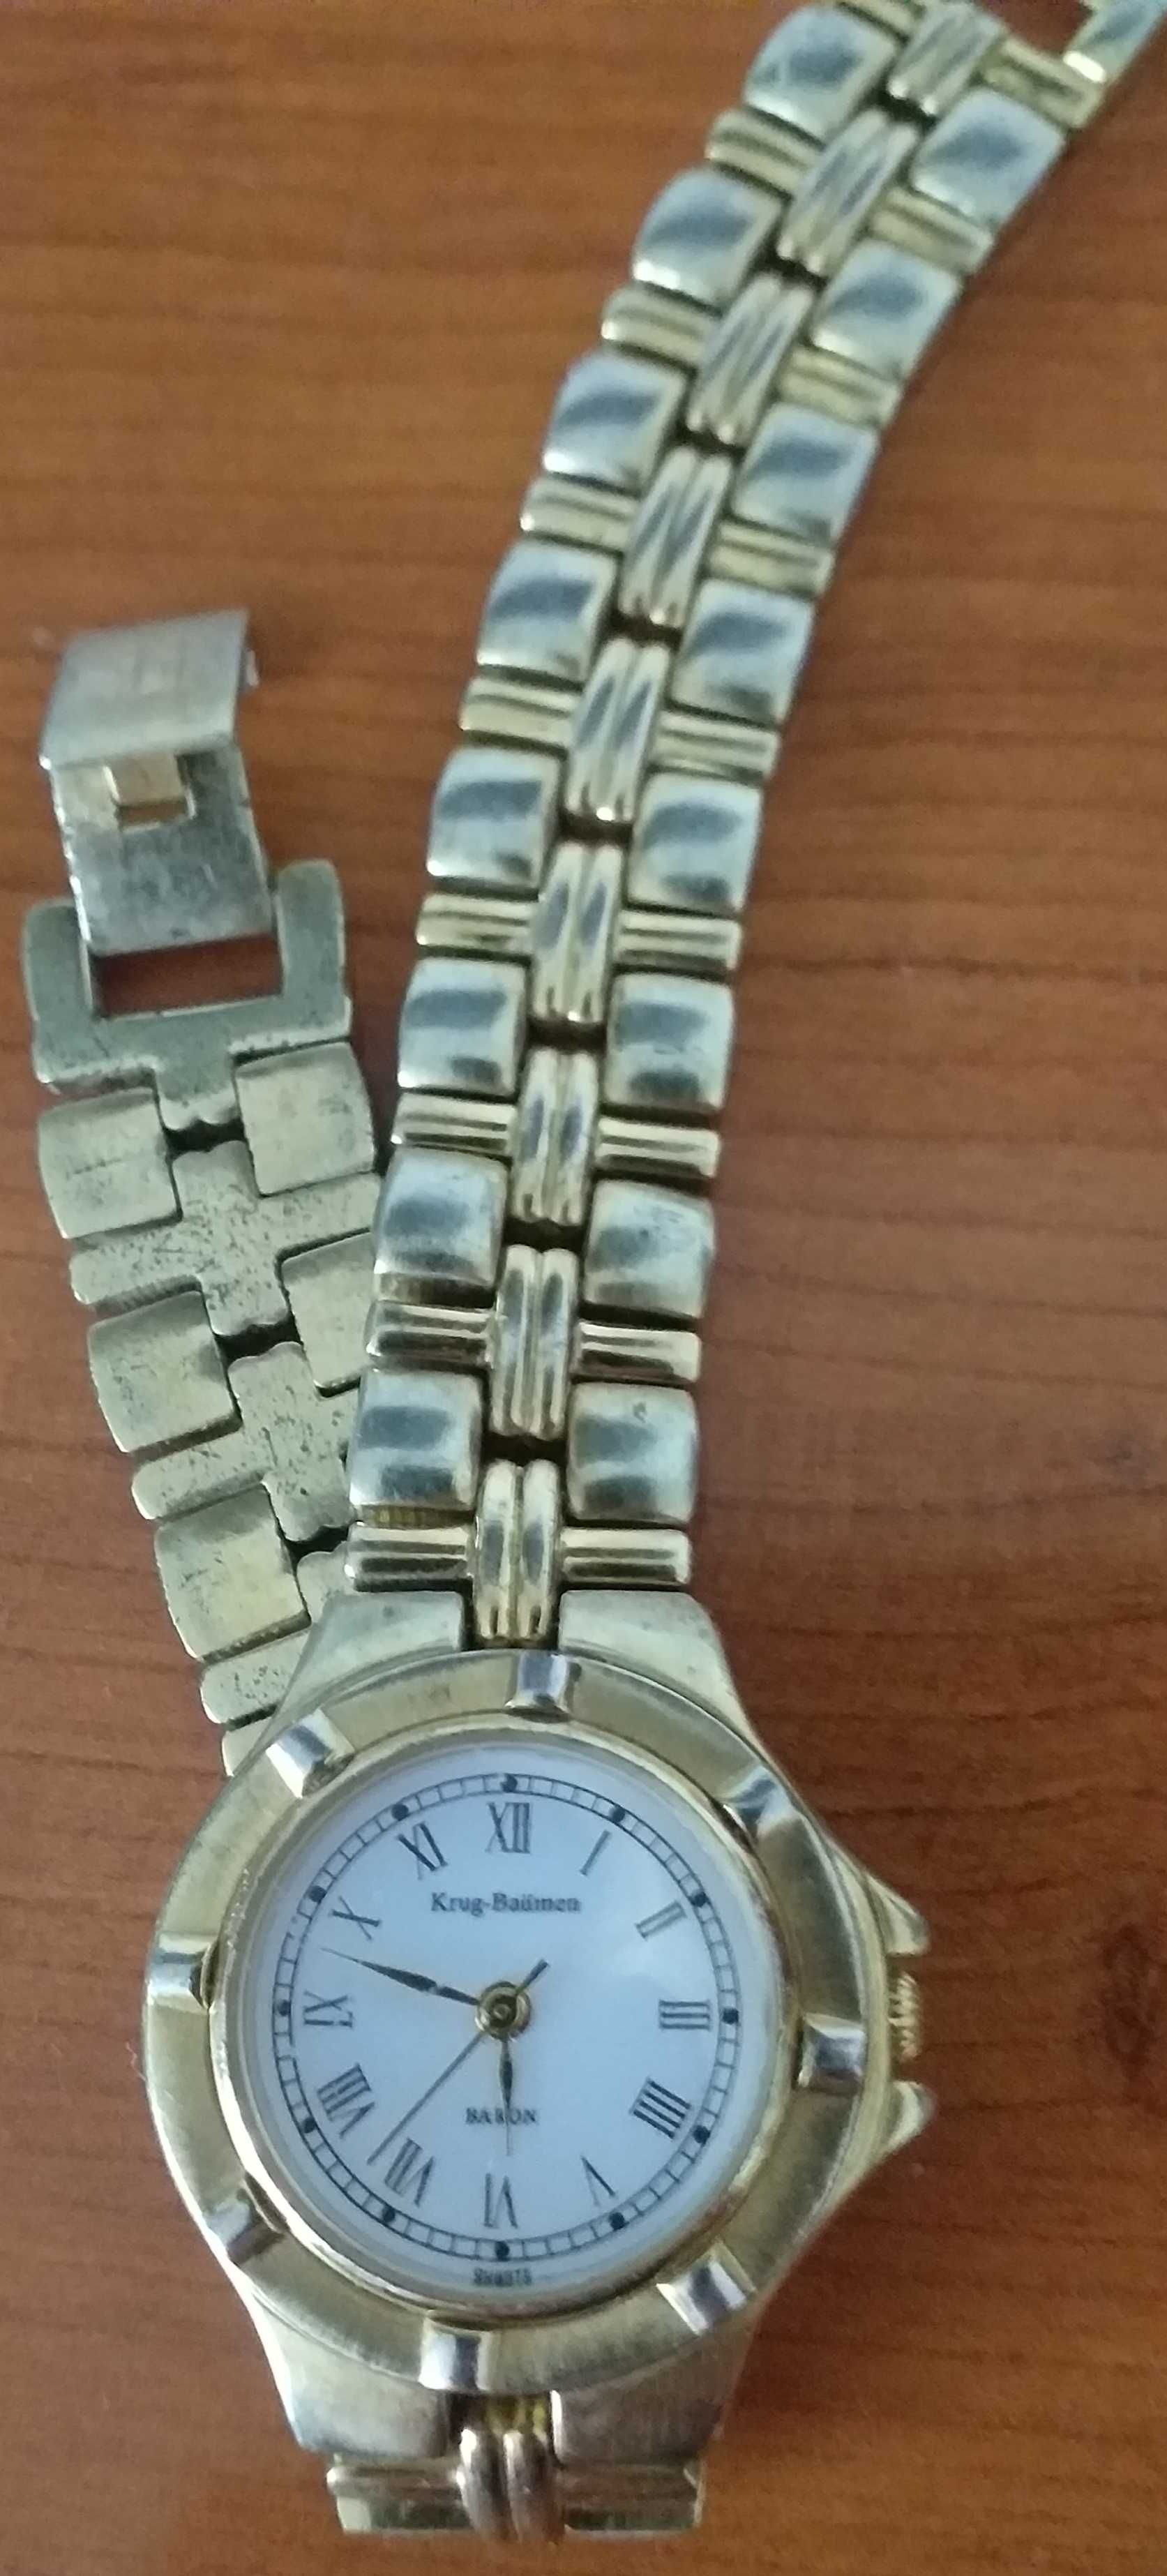 Złoty zegarek krug baumen 18 karatów damski